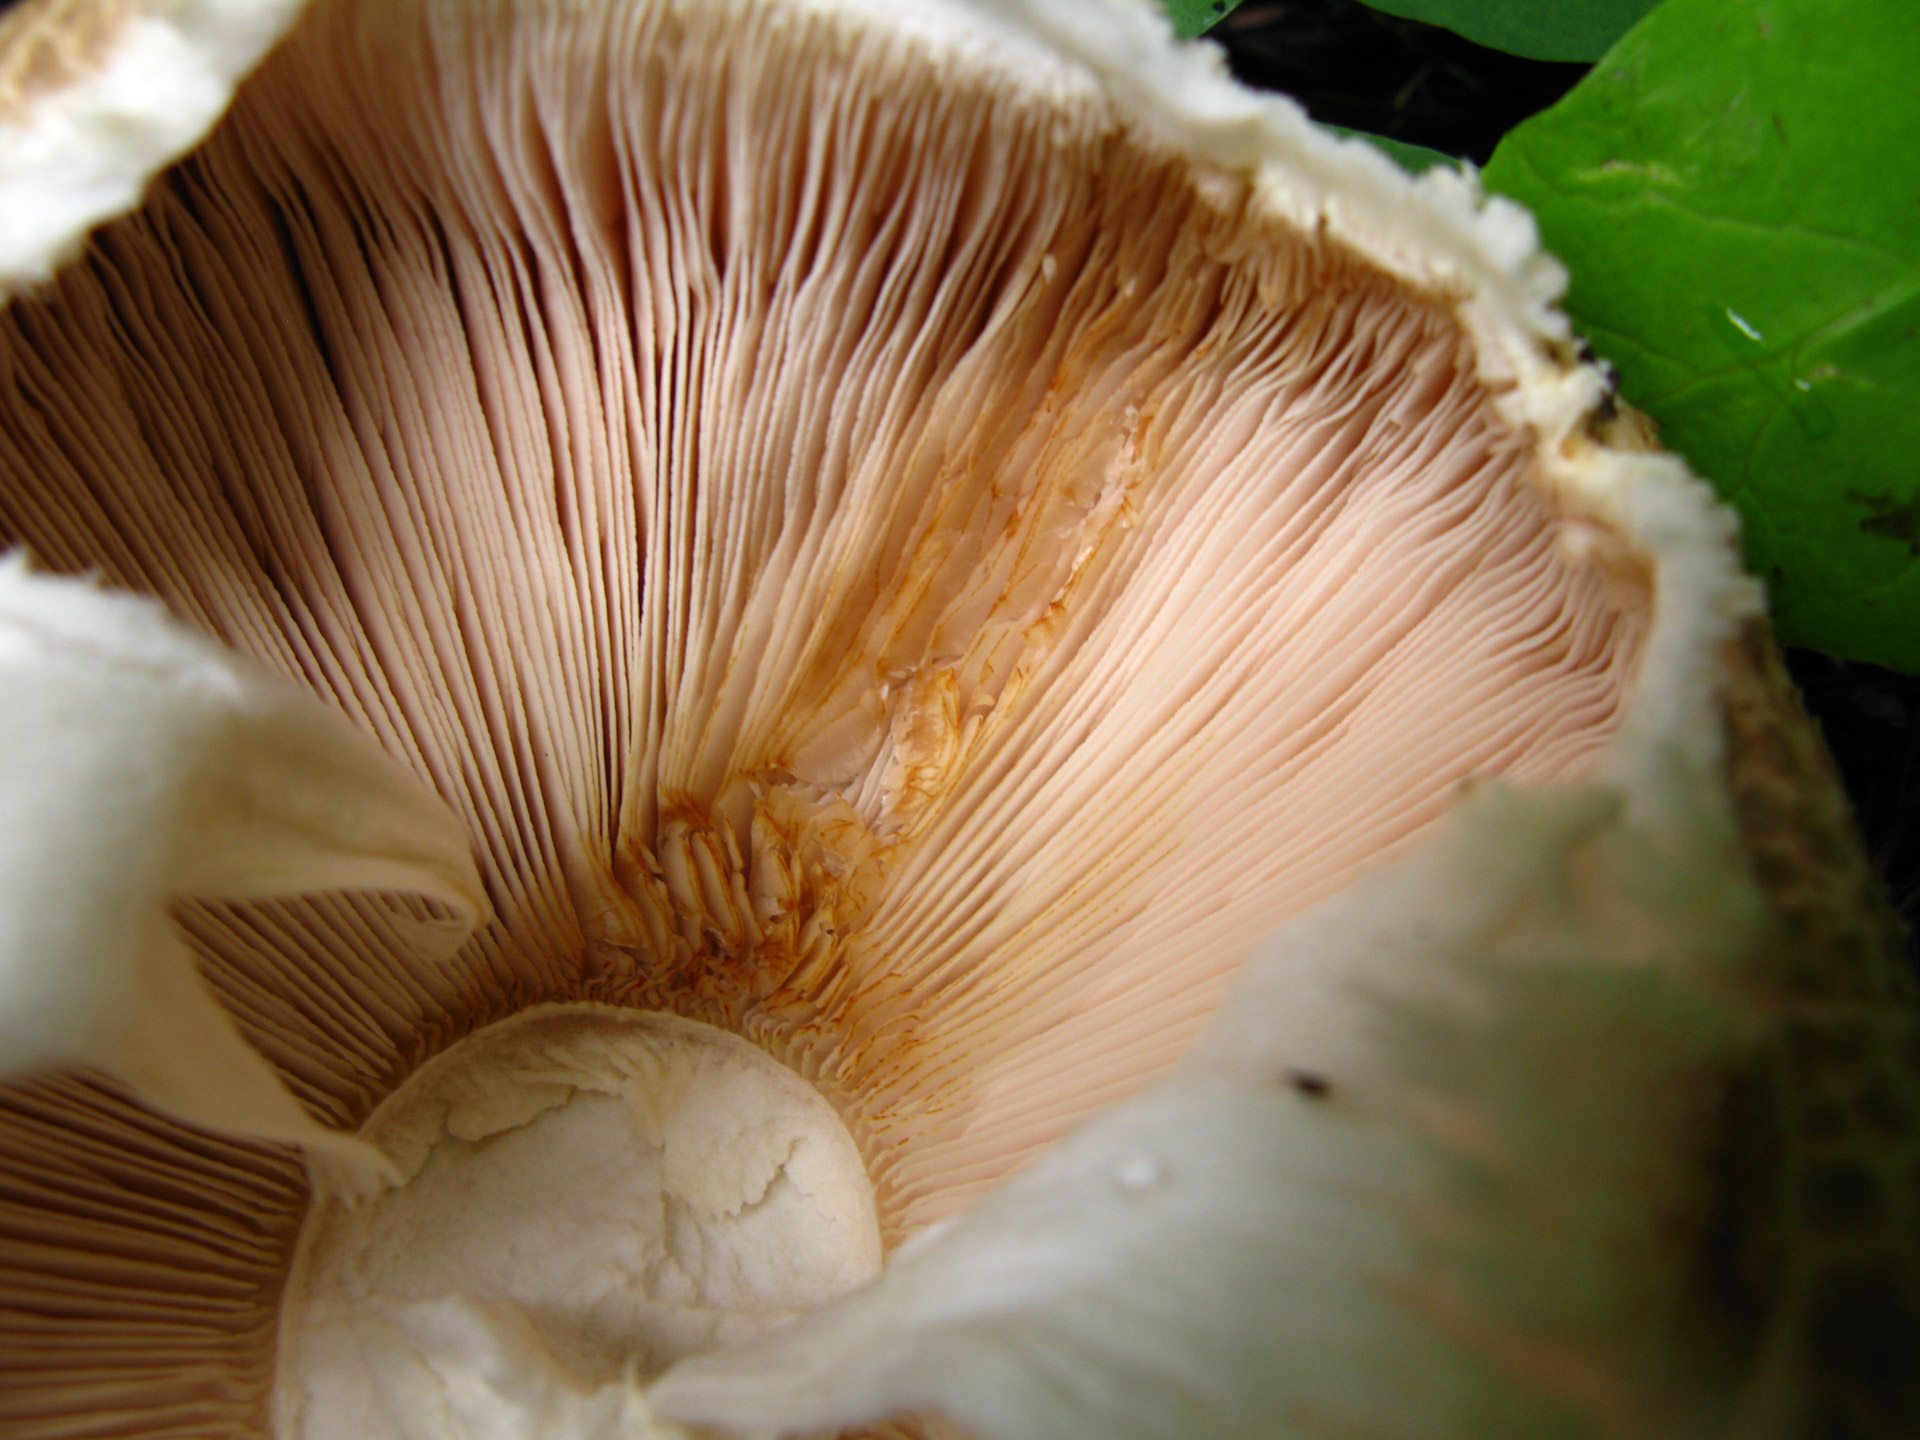 The underside of a mushroom